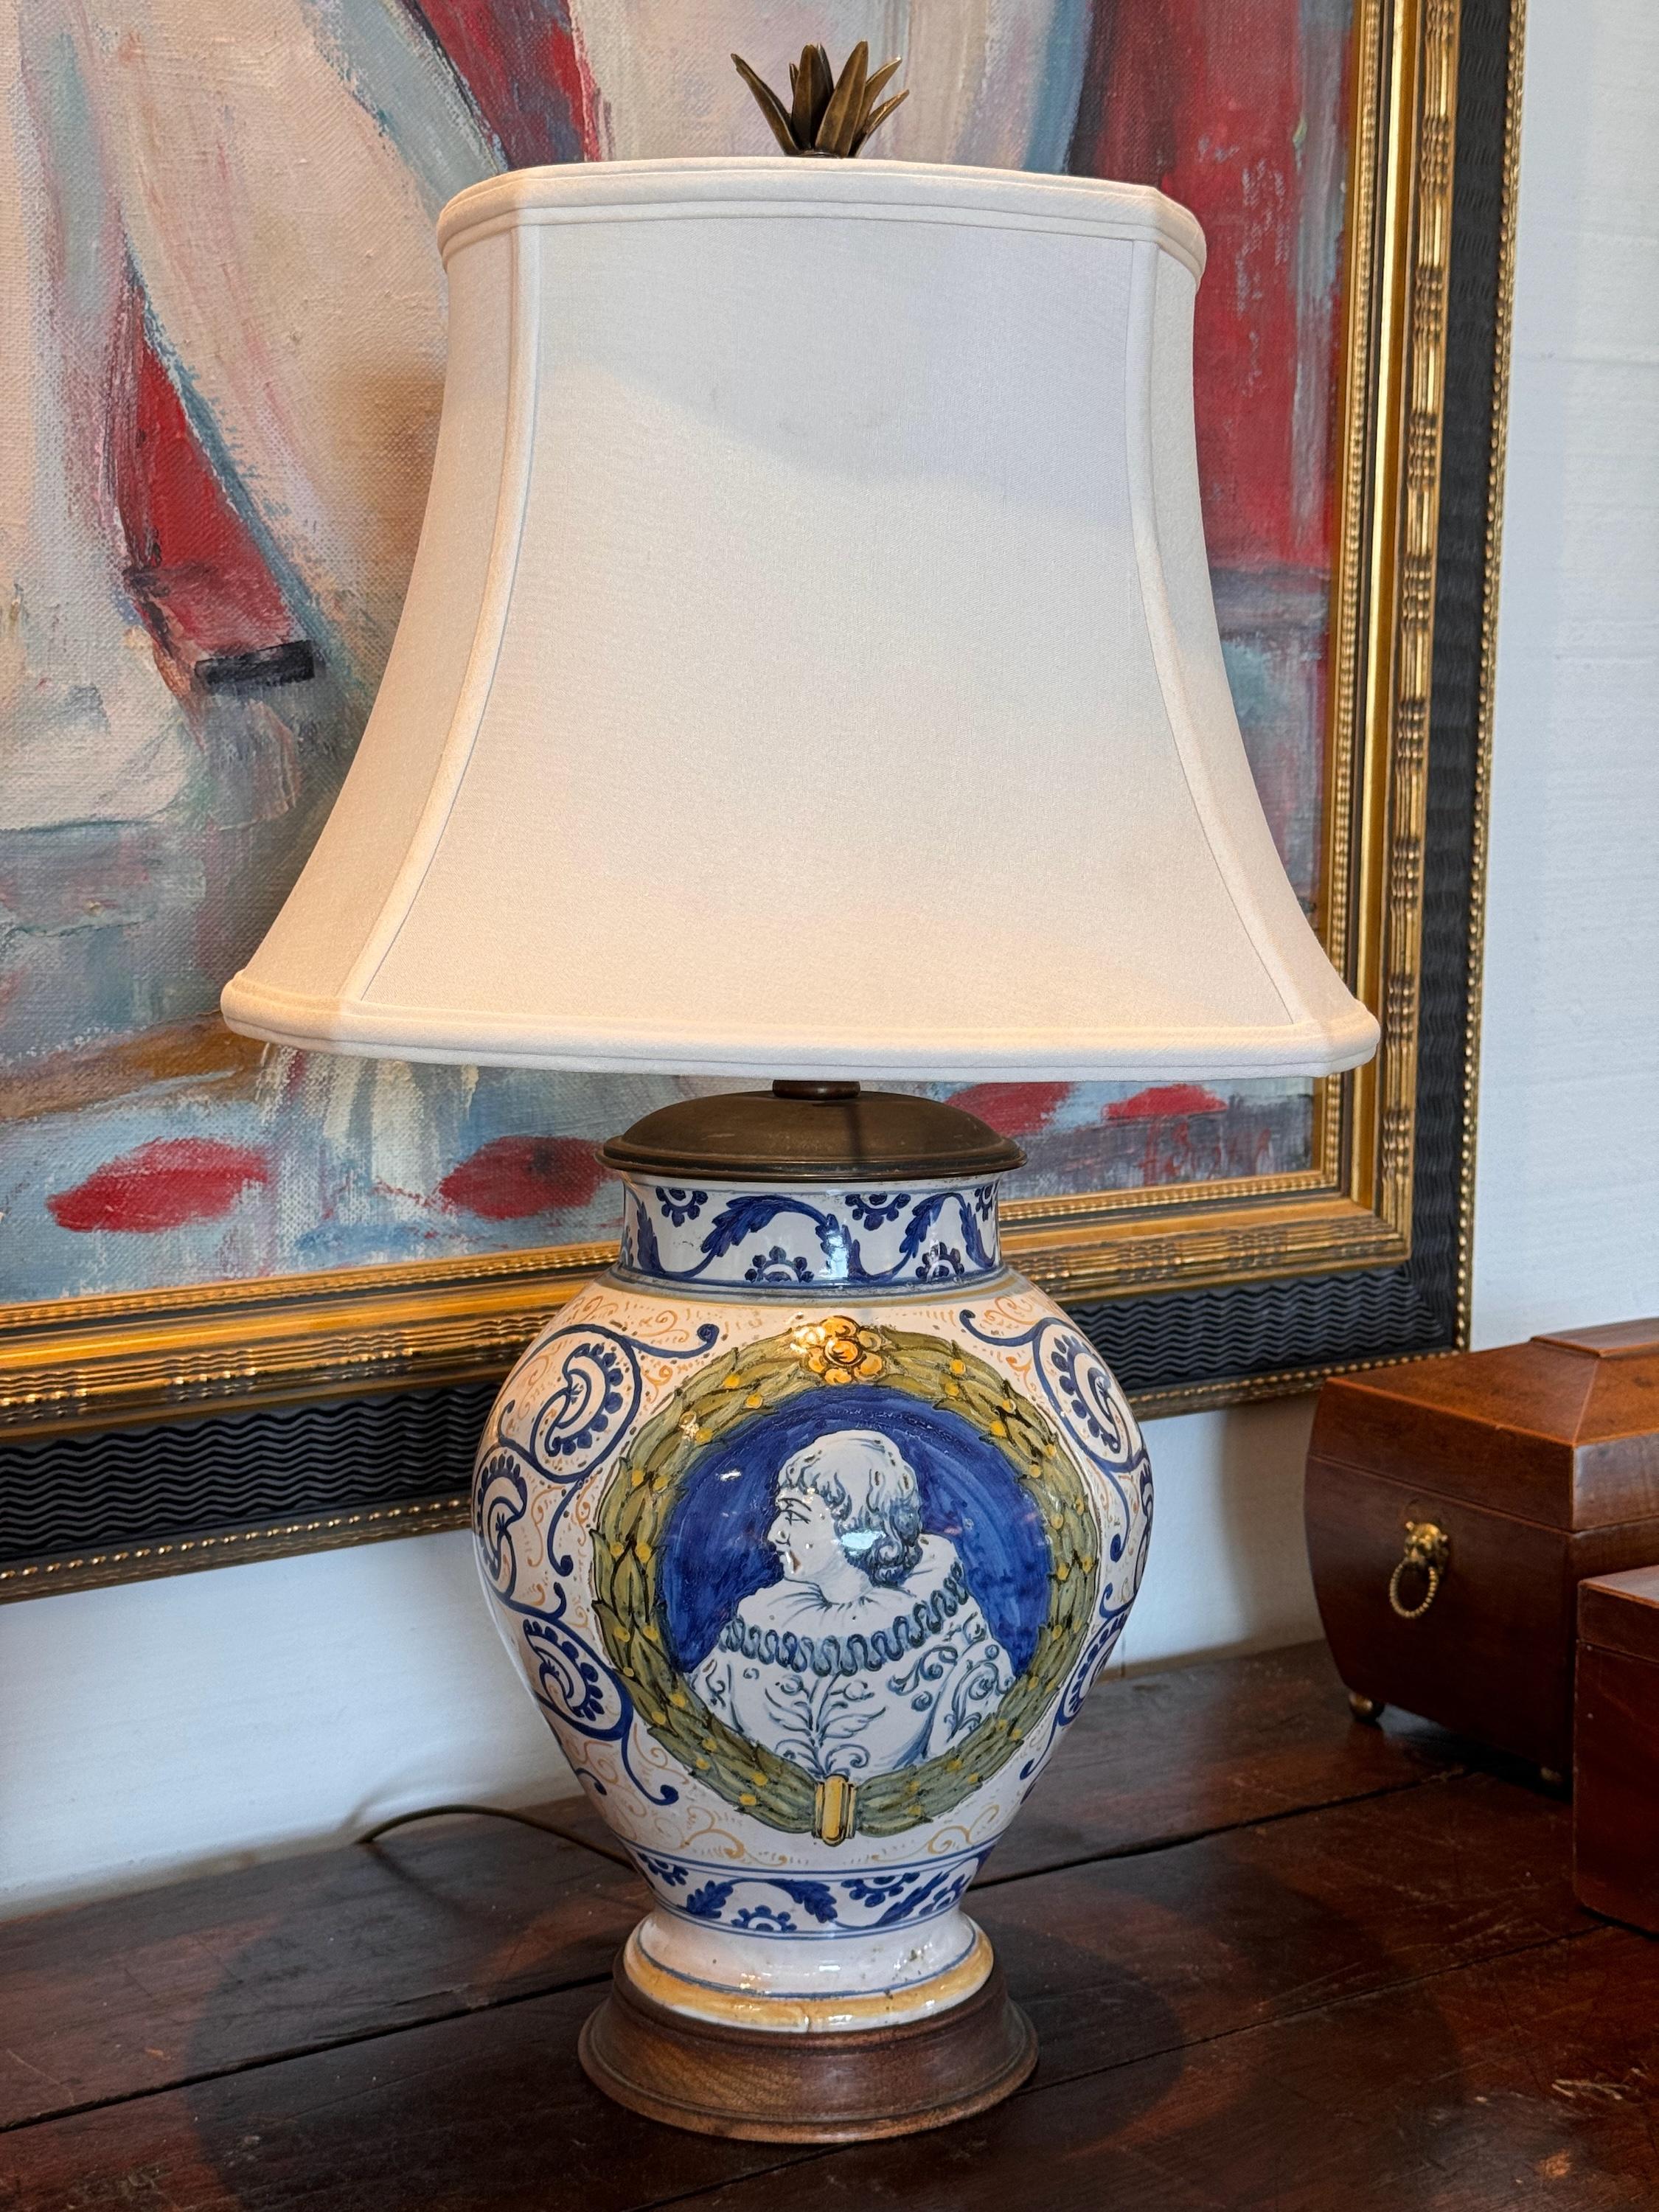 C'est une lampe magnifique. Il a été fabriqué à partir d'une jarre italienne.